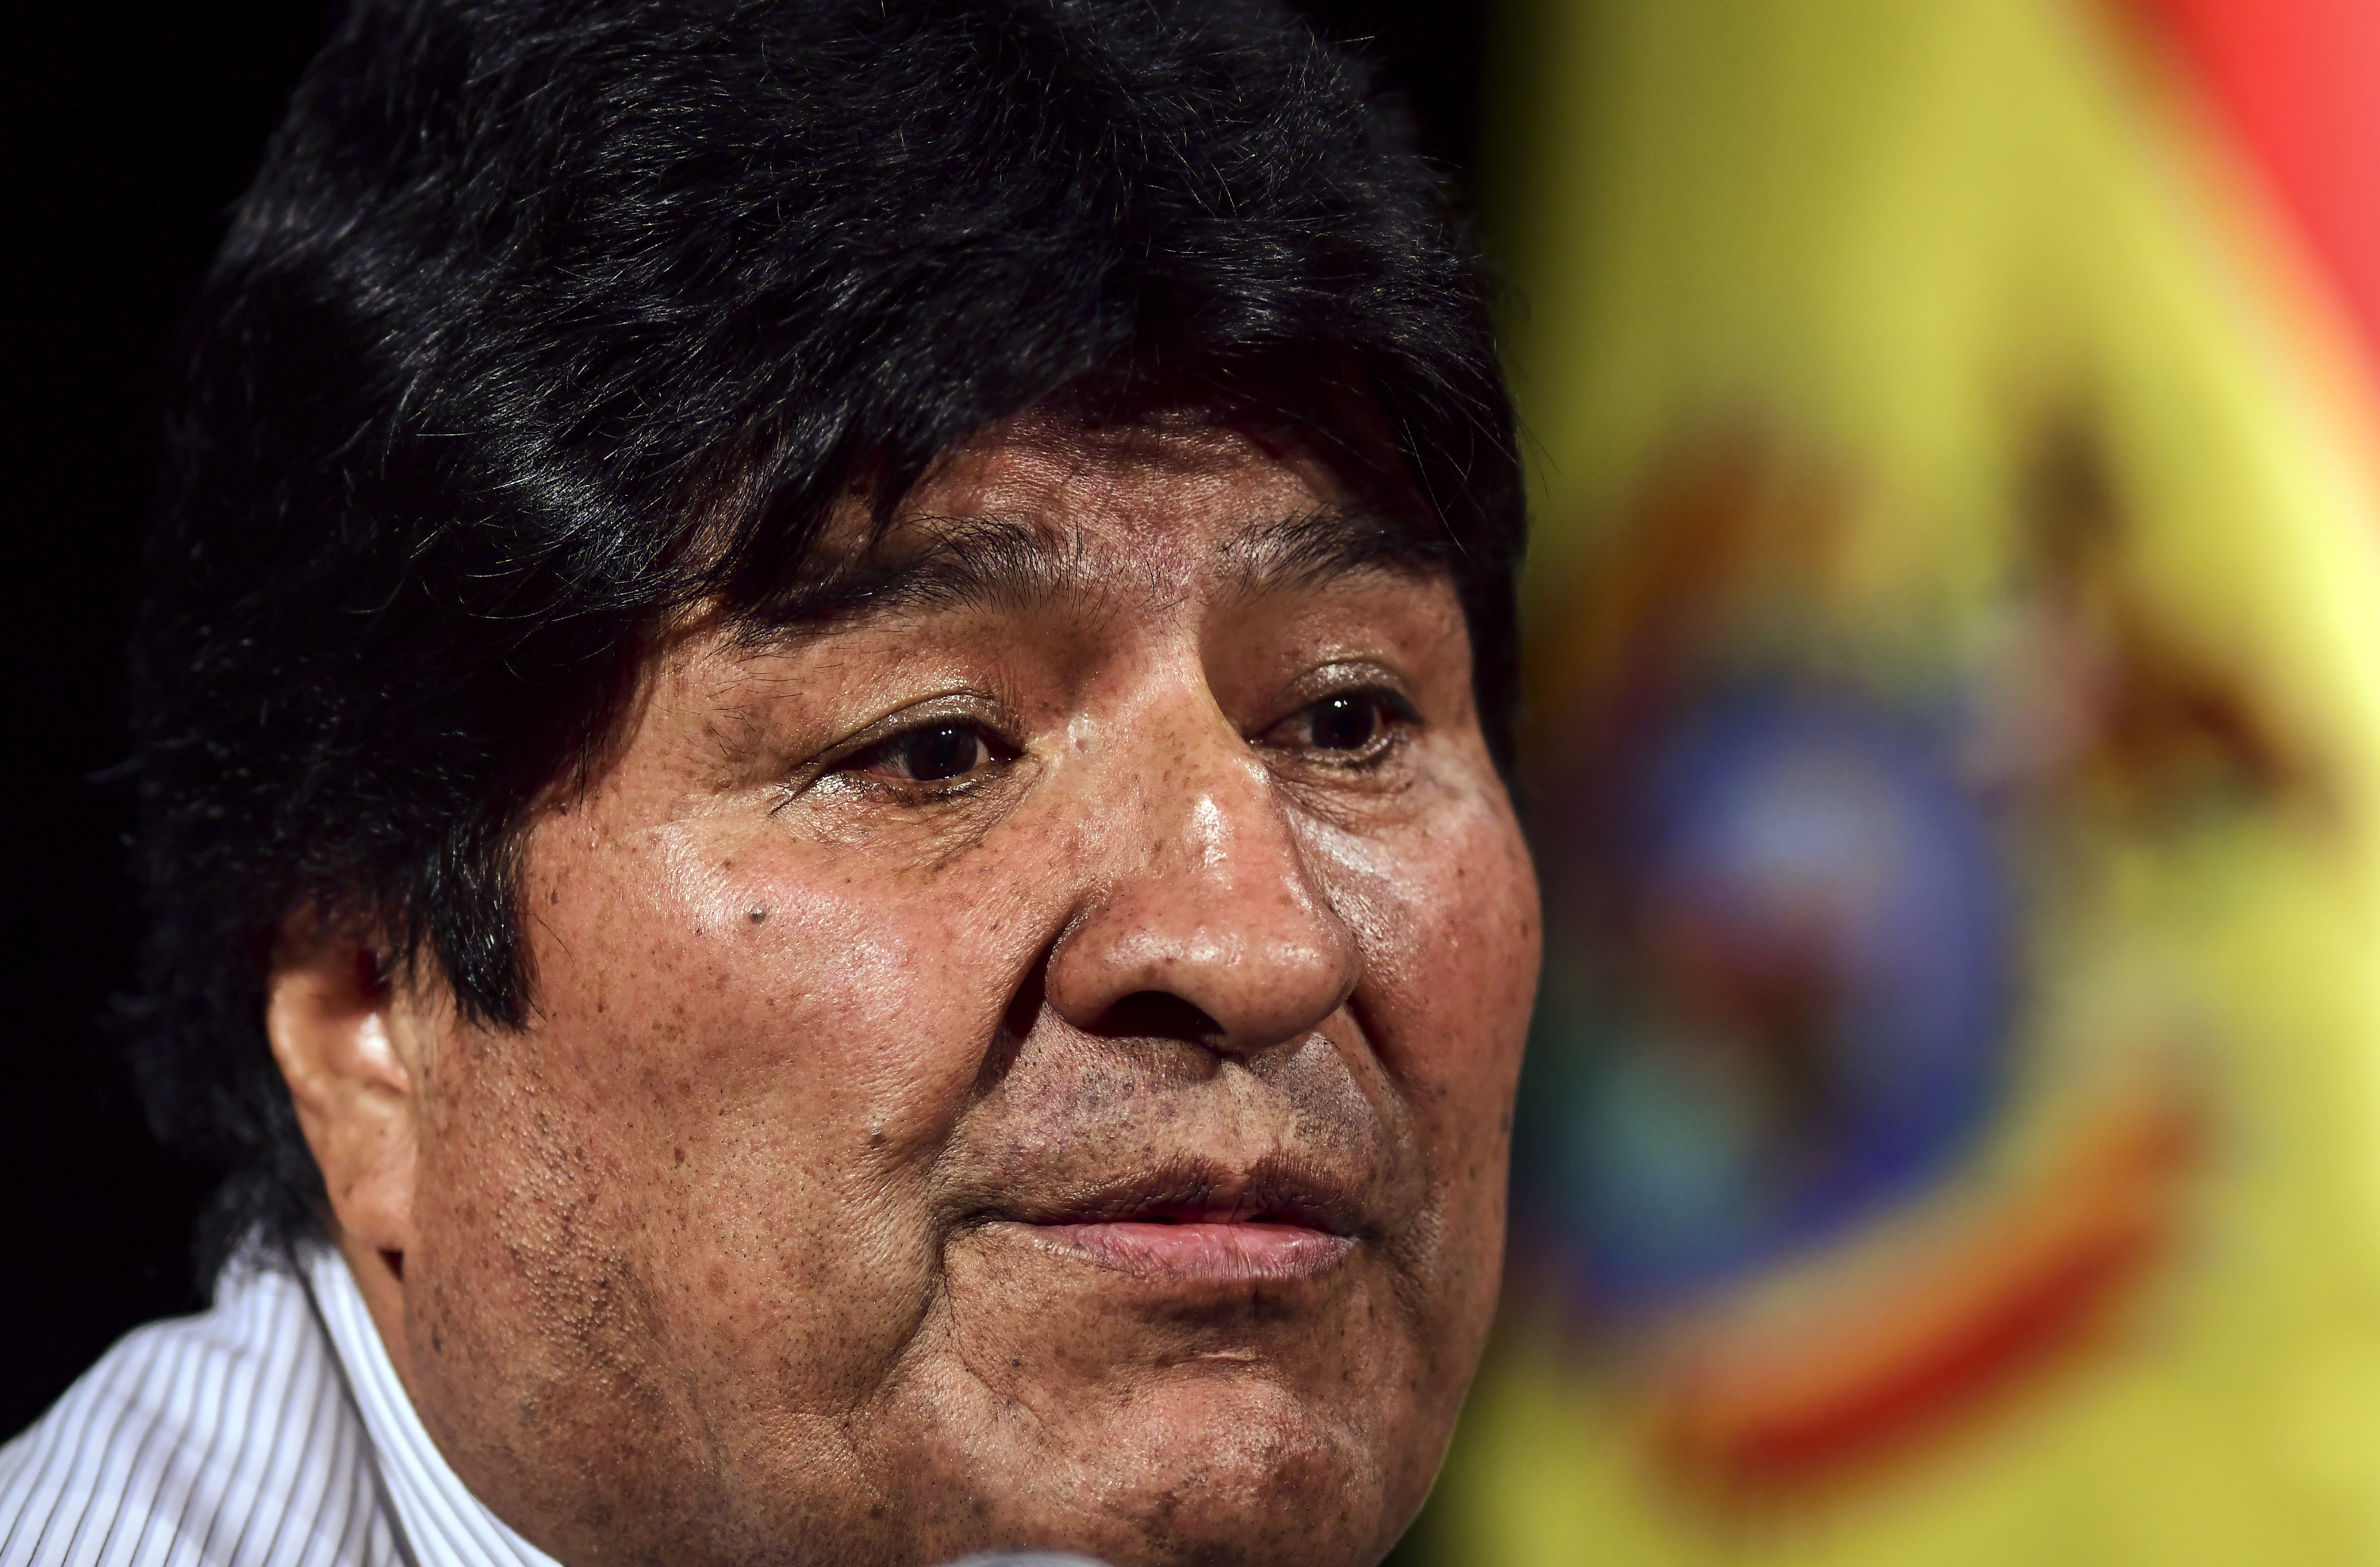 En VIDEO: Evo Morales tenía una clínica exclusiva con suite, sauna y equipos de alta tecnología